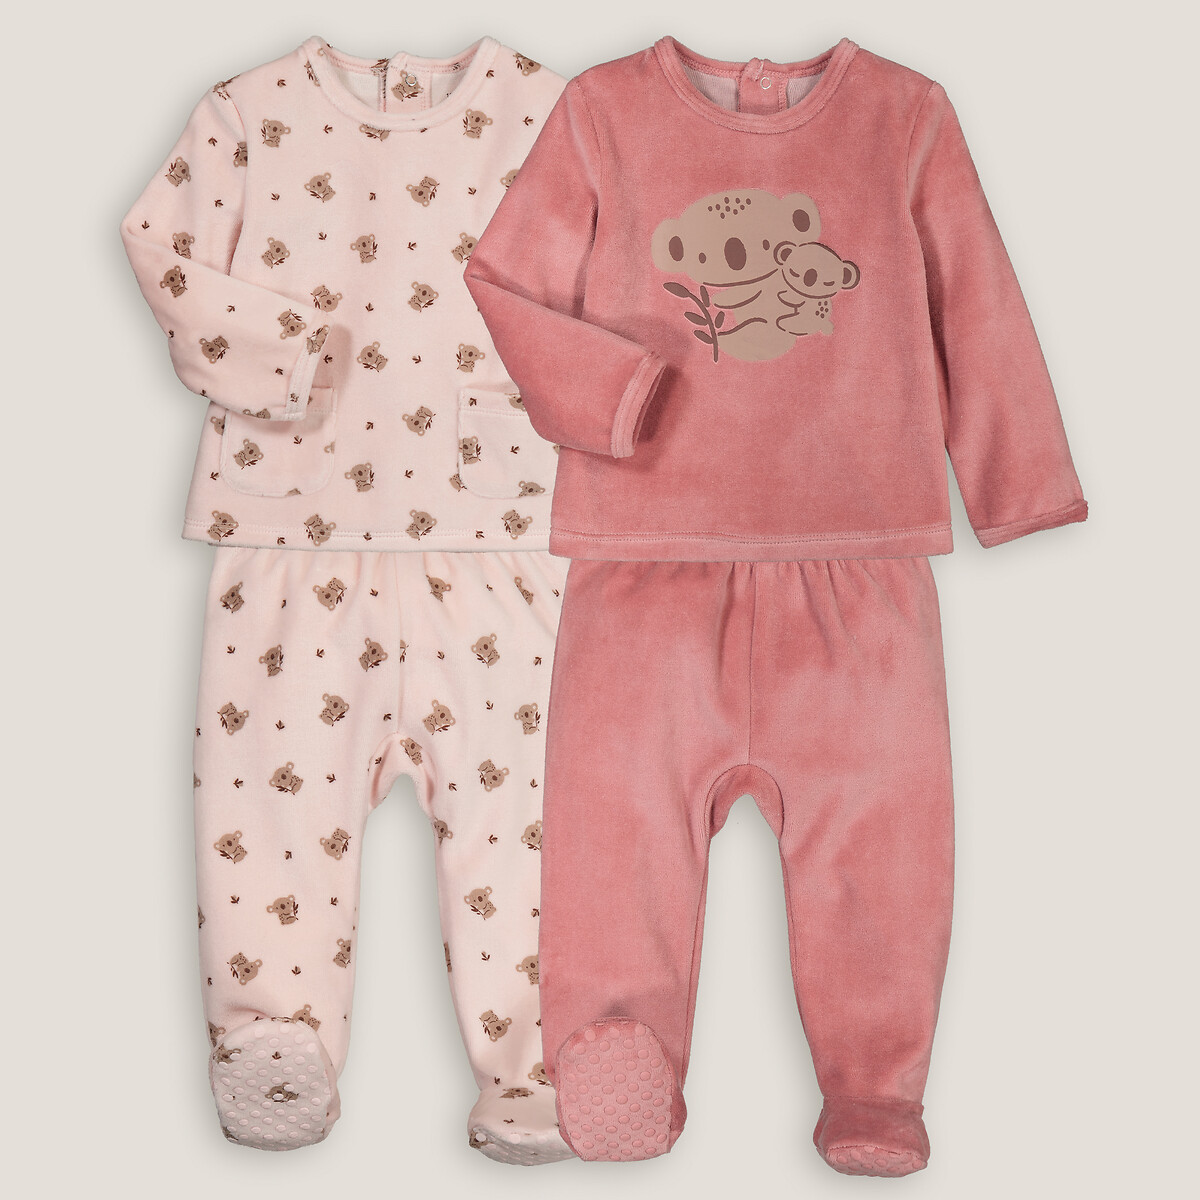 Комплект из двух пижам раздельных из велюра принт коалы 4 года - 102 см розовый комплект из двух раздельных пижам из велюра 4 года 102 см бежевый